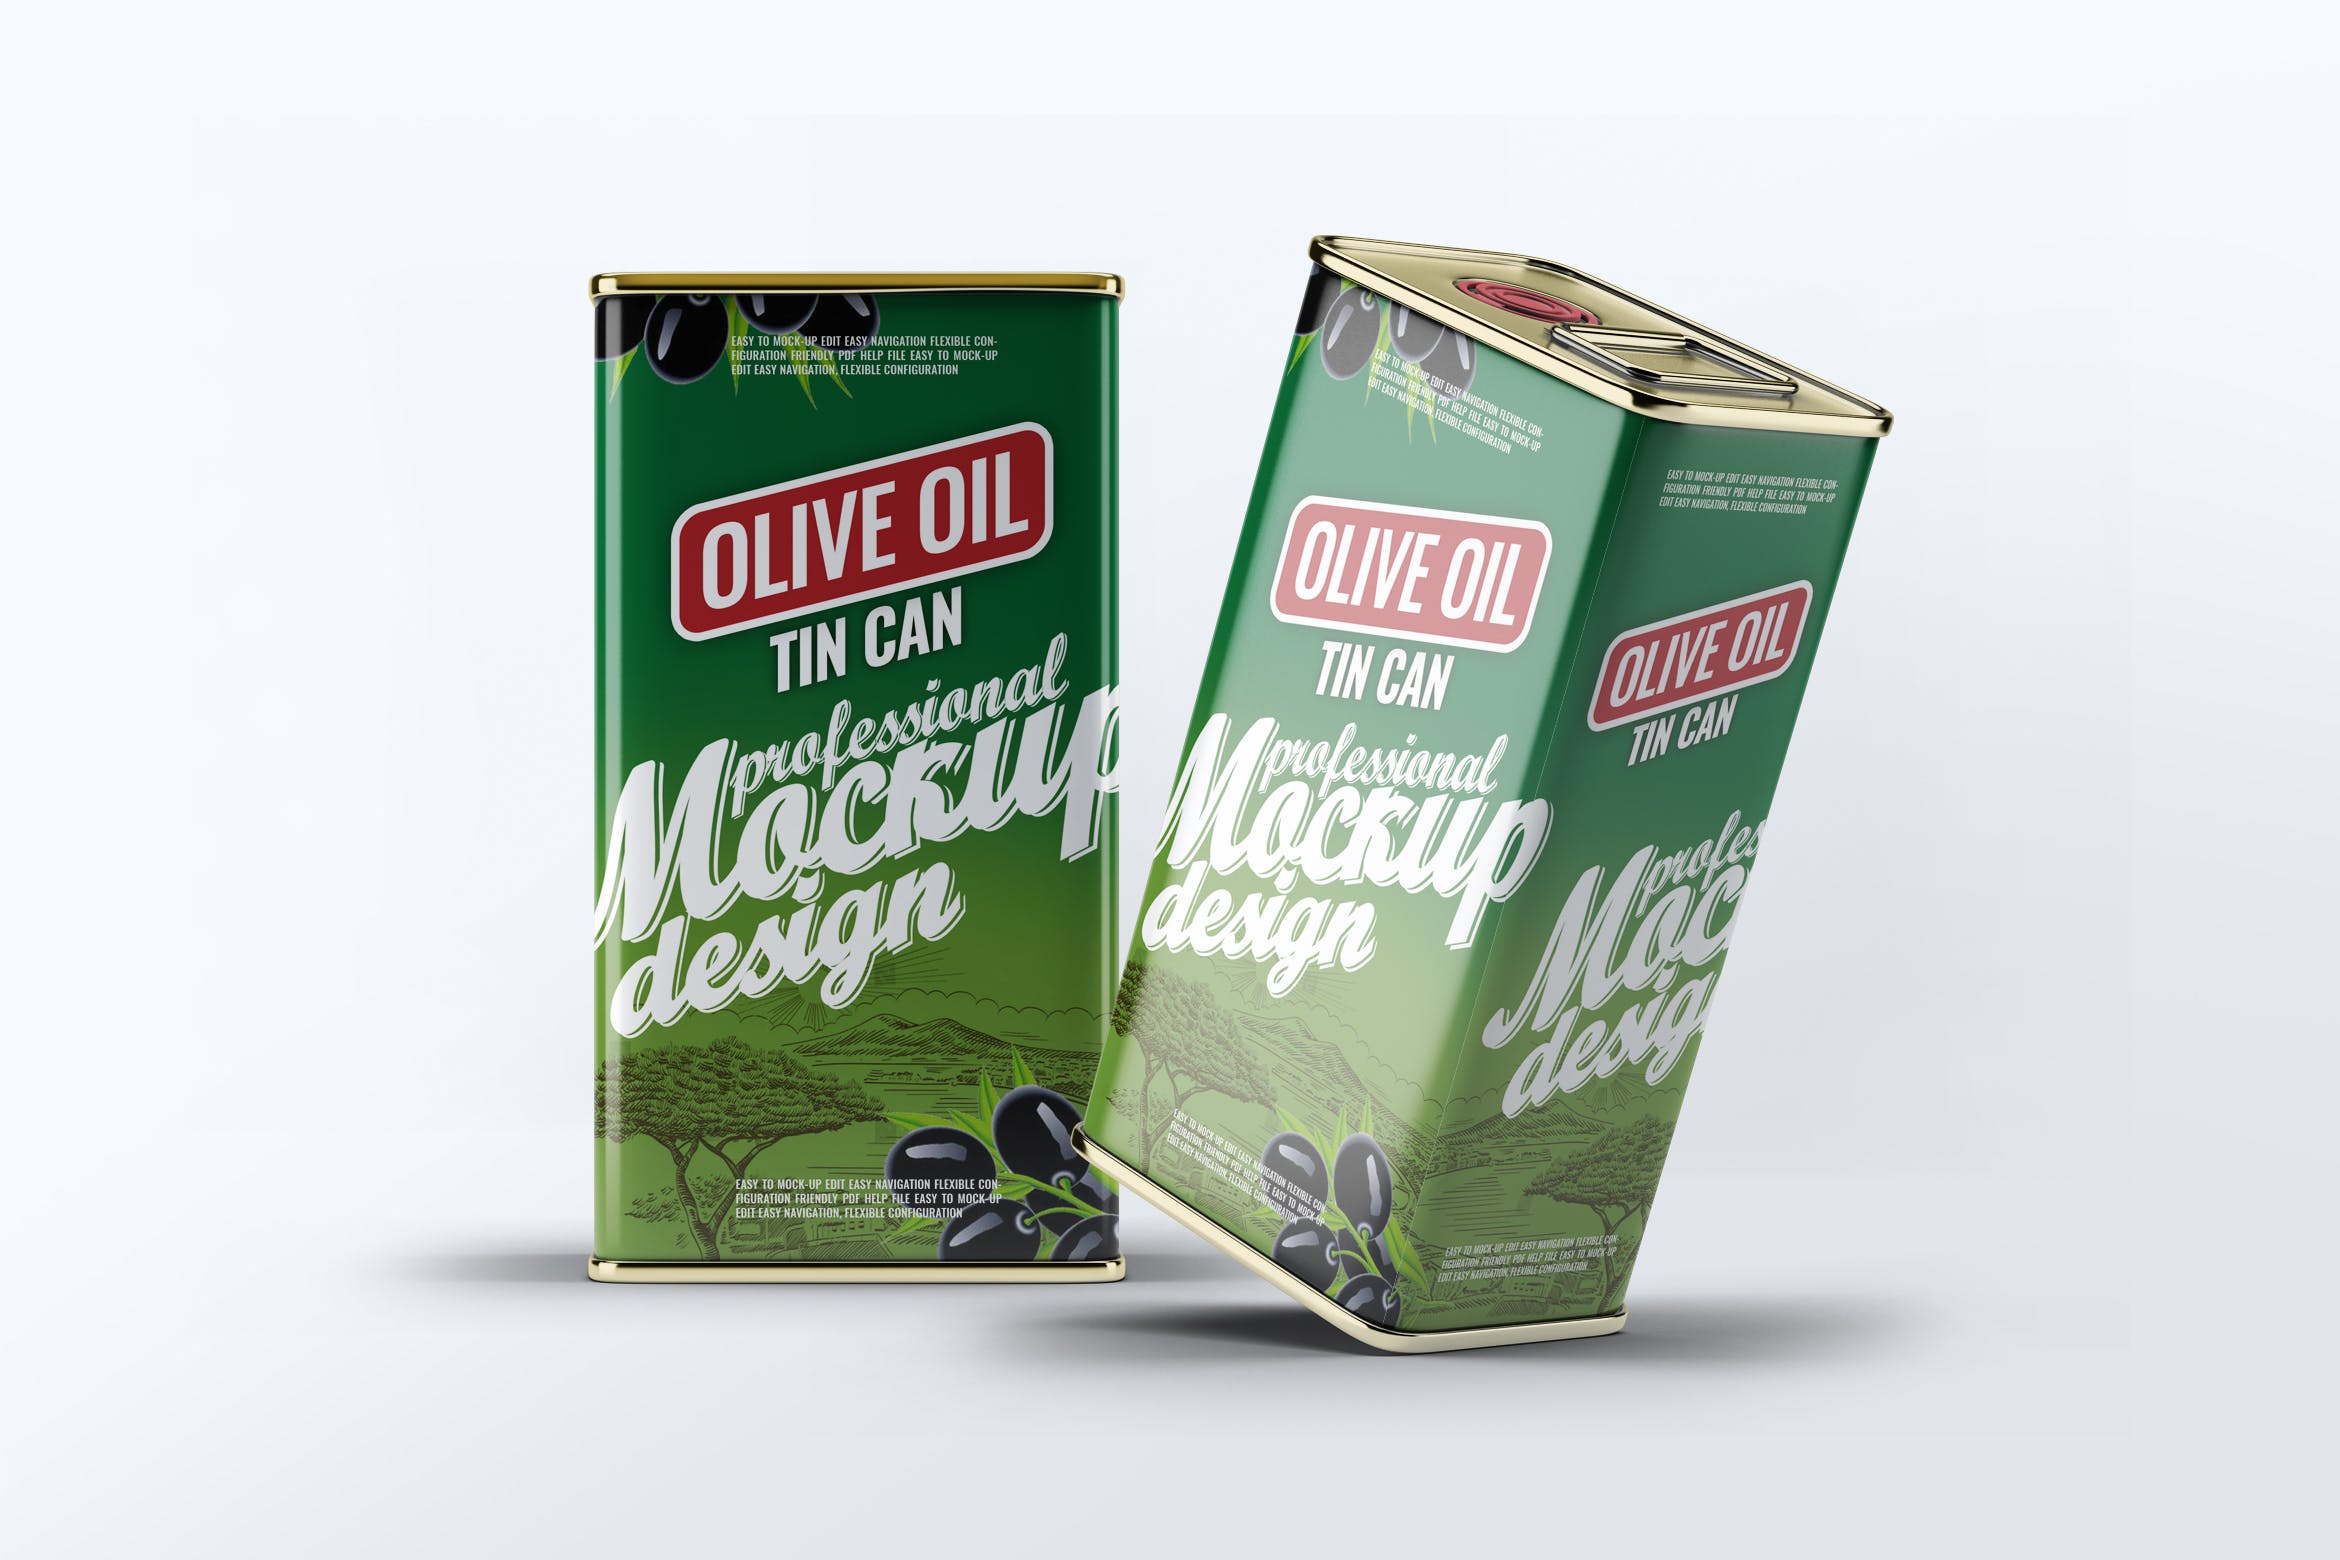 橄榄油罐头包装外观设计效果图蚂蚁素材精选模板 Tin Can Olive Oil Mock-Up插图